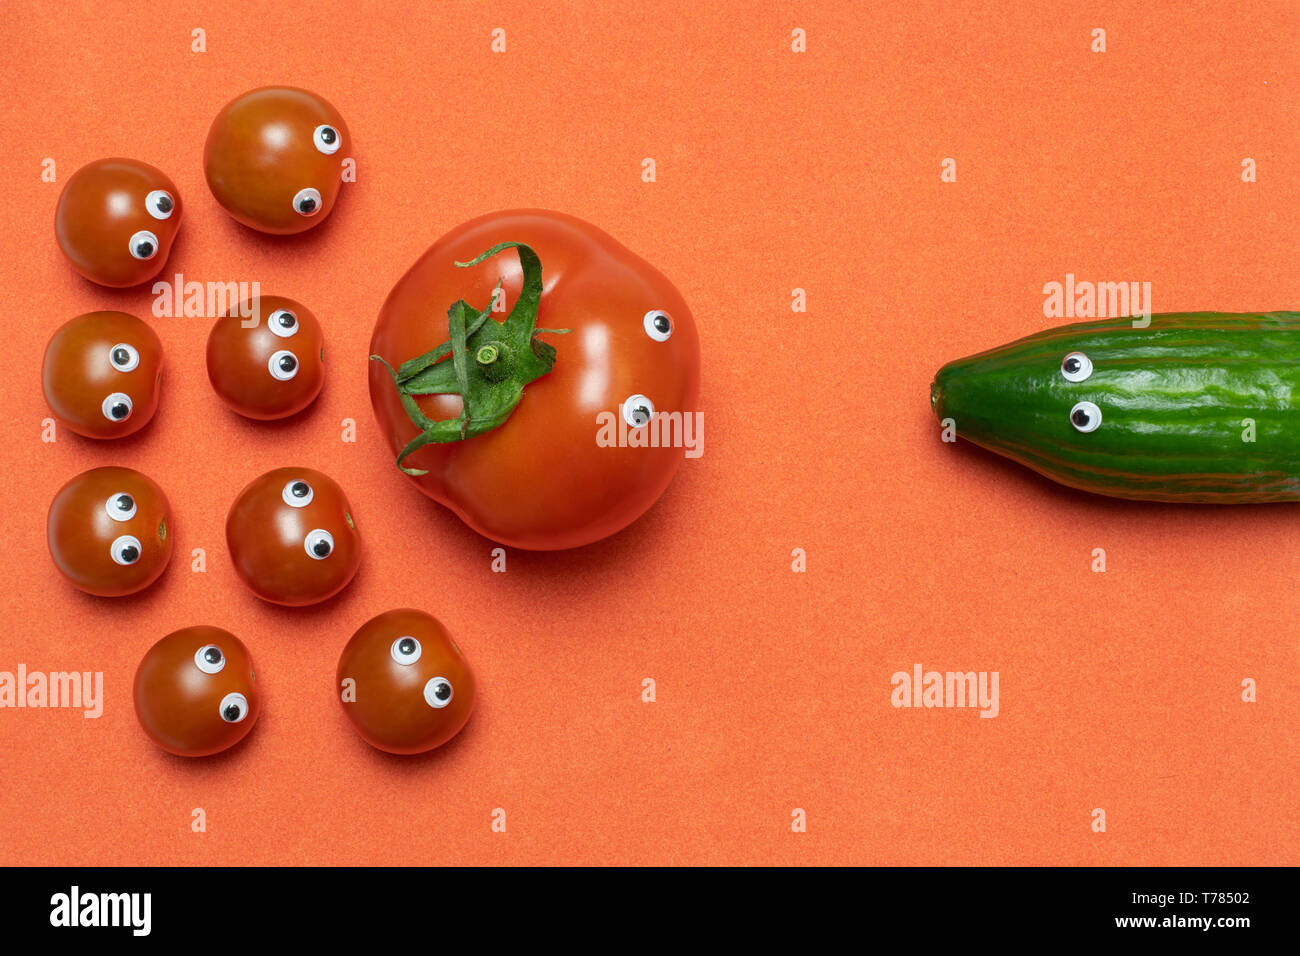 Tomaten und Gurke Konzept, kopieren. Live frische Kirschtomaten und großen  Gewächshaus Tomaten met eine Gurke. Vergleich und Auswahl salat Zutaten. Re  Stockfotografie - Alamy